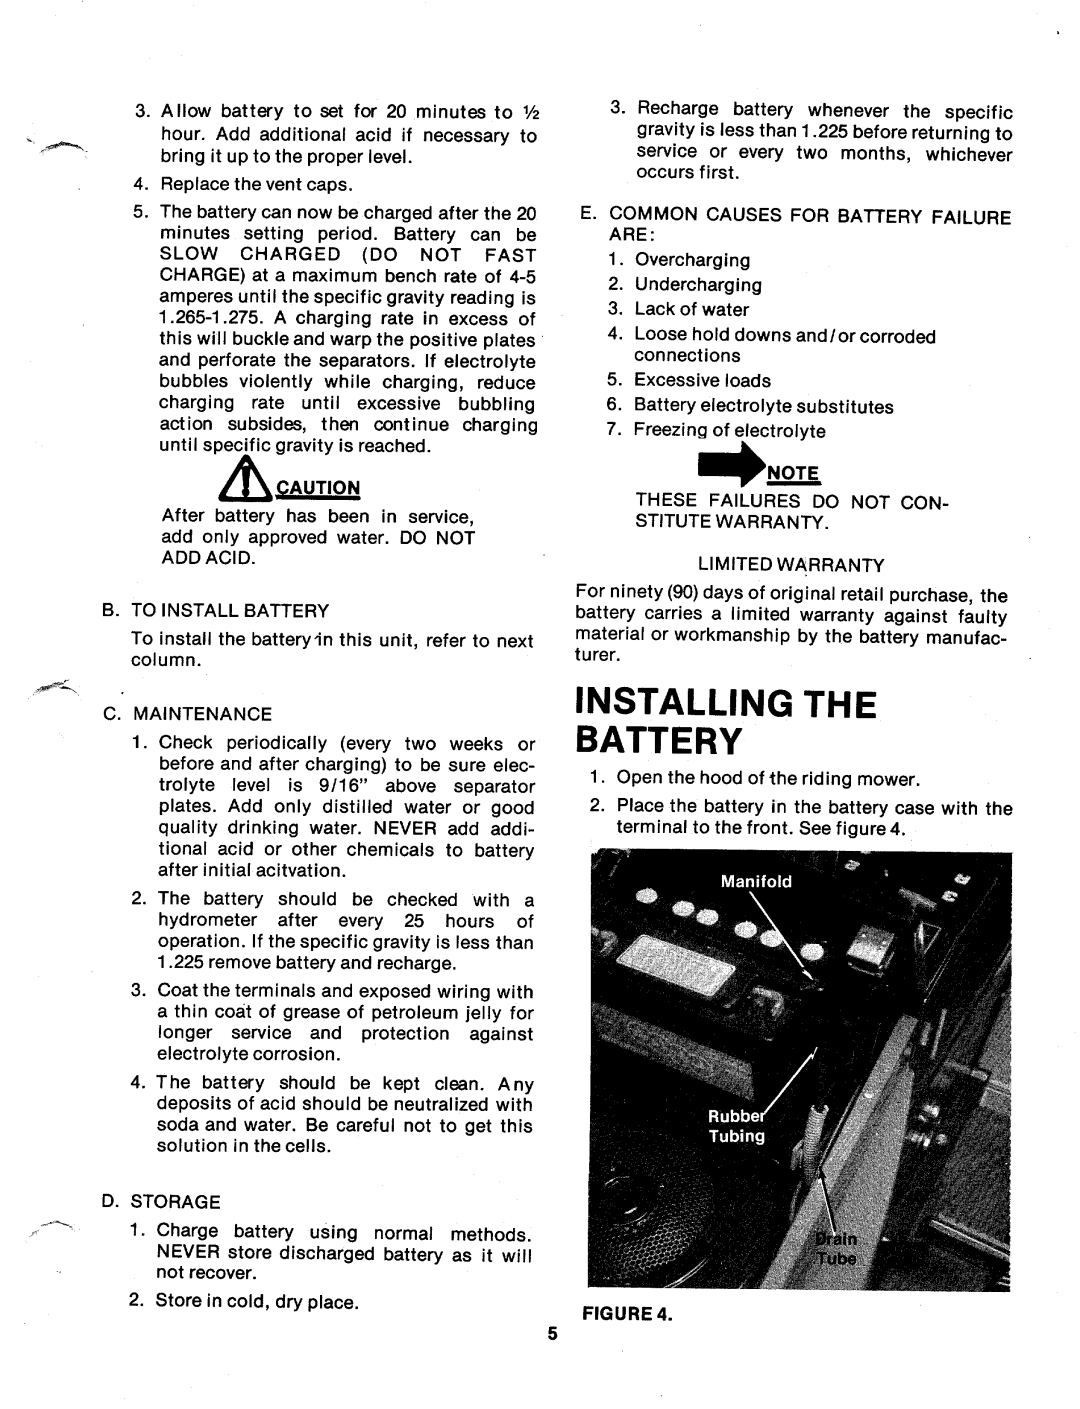 MTD 136-497A, 136-495A manual 